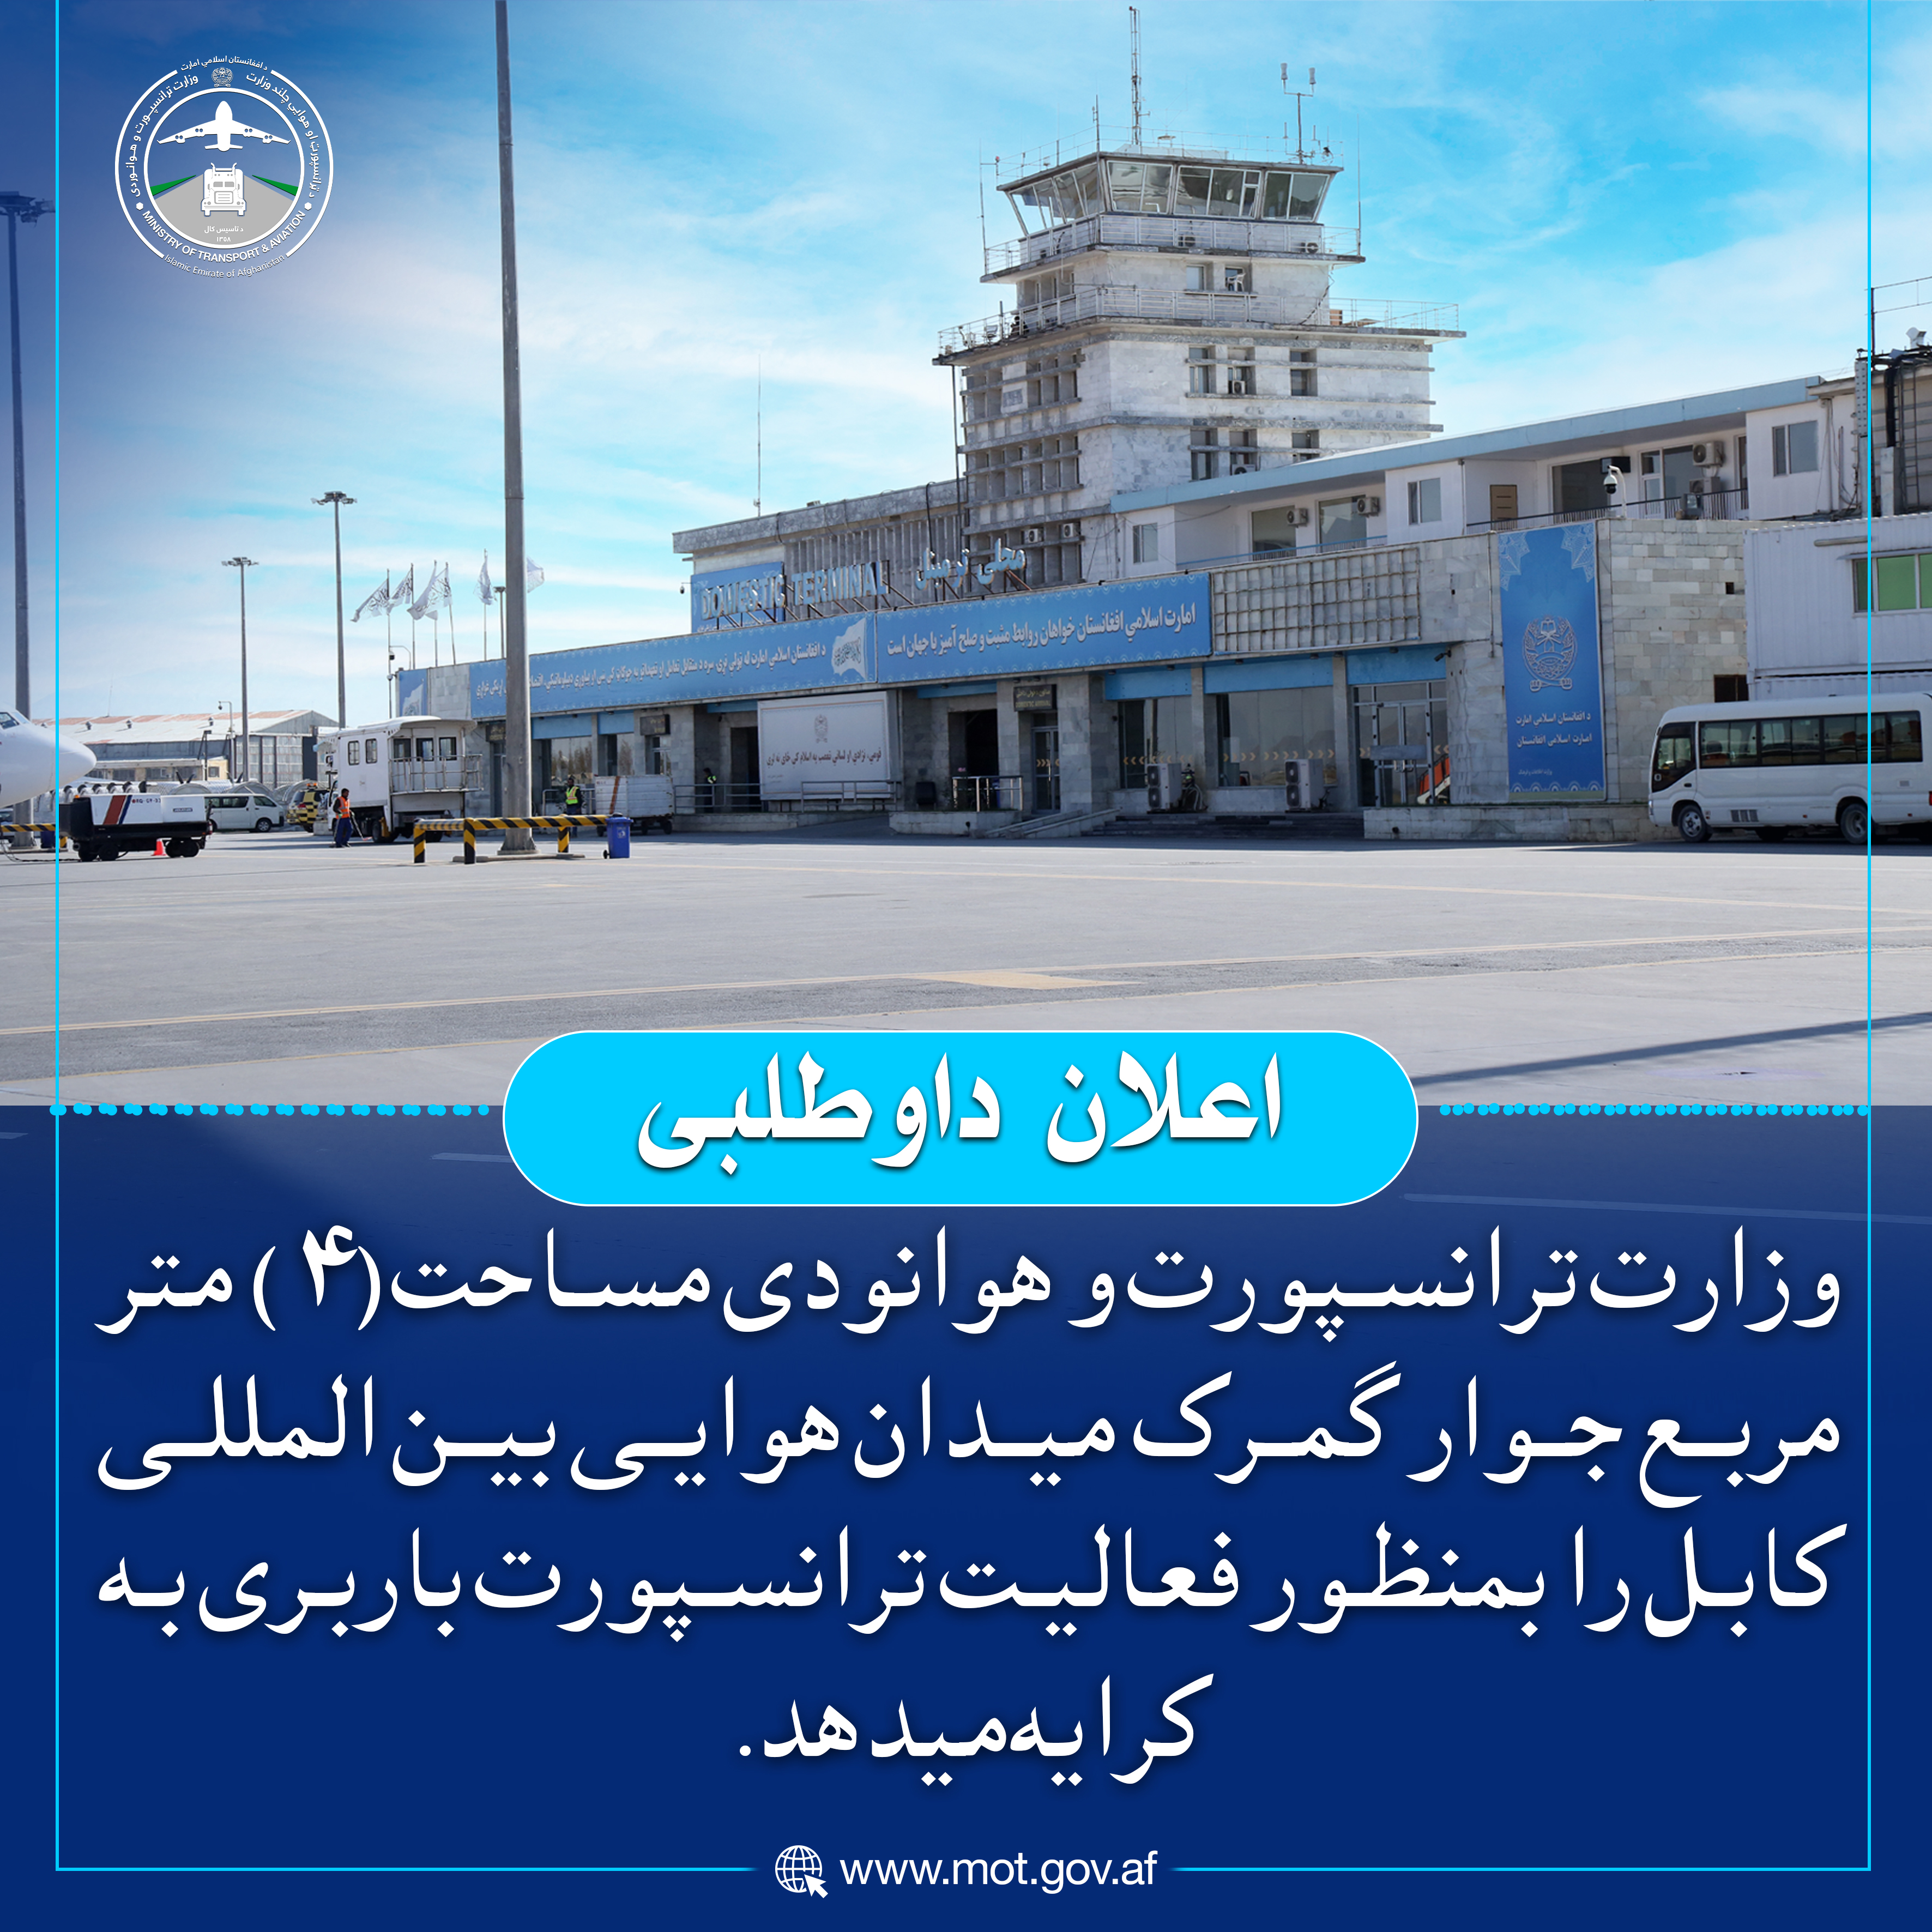 وزارت ترانسپورت و هوانودی مساحت (۴) متر مربع جوار گمرک میدان هوایی بین المللی کابل را بمنظور فعالیت ترانسپورت باربری به کرایه میدهد.